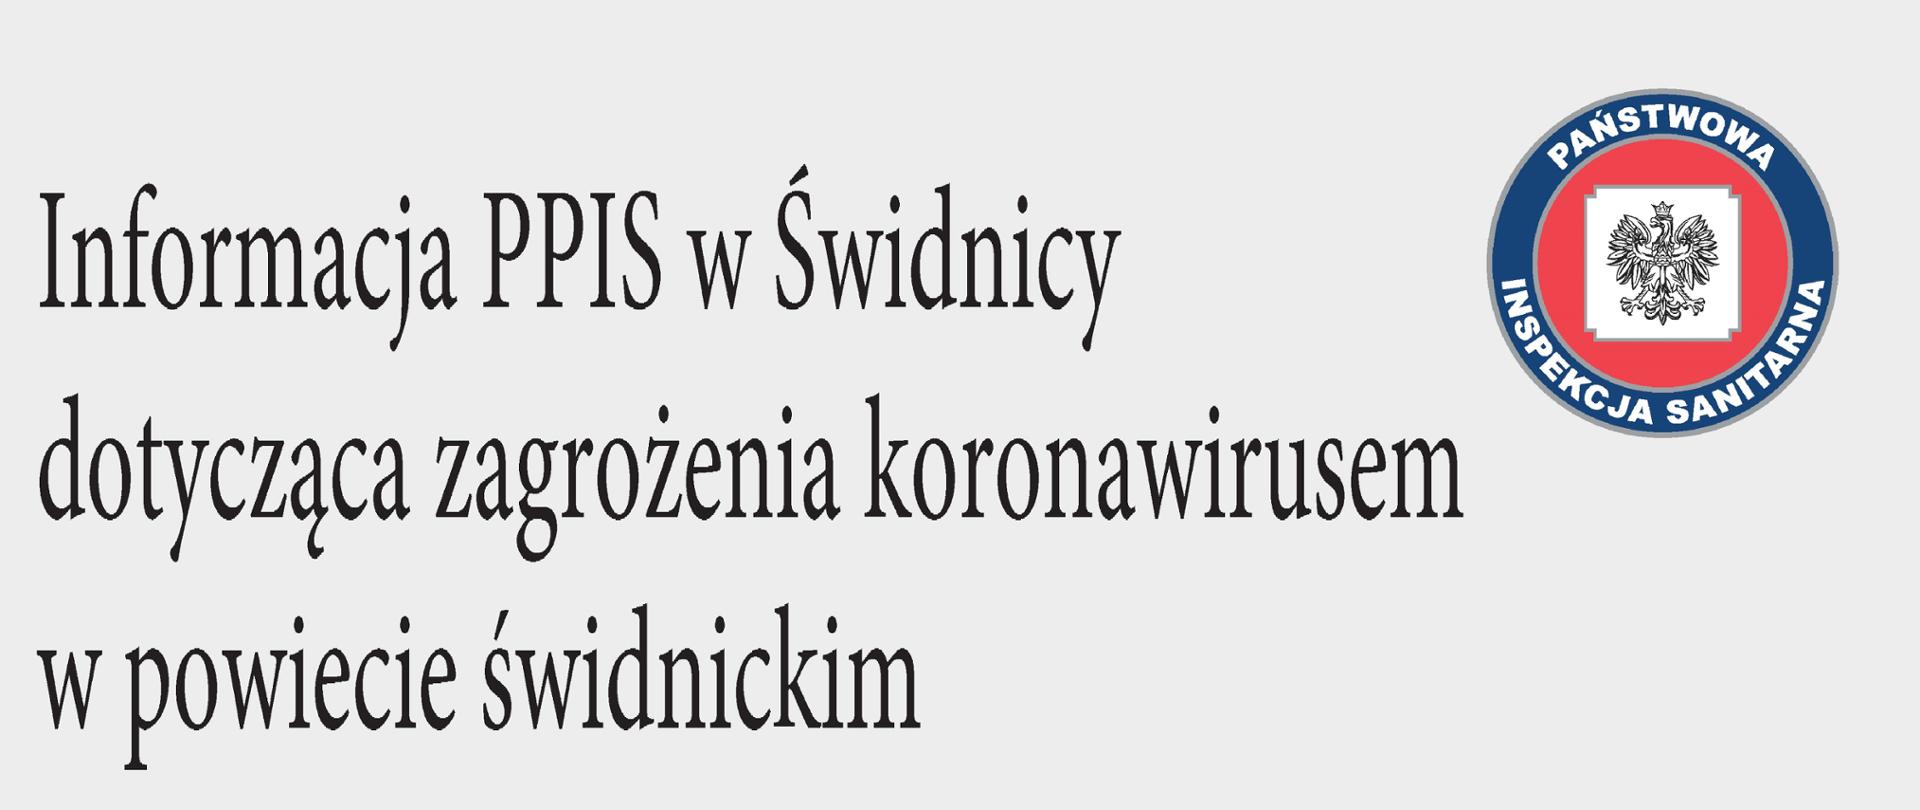 Zdjęcie na szarym tle o treści - Informacja dotycząca zagrożenia koronawirusem w powiecie świdnickim